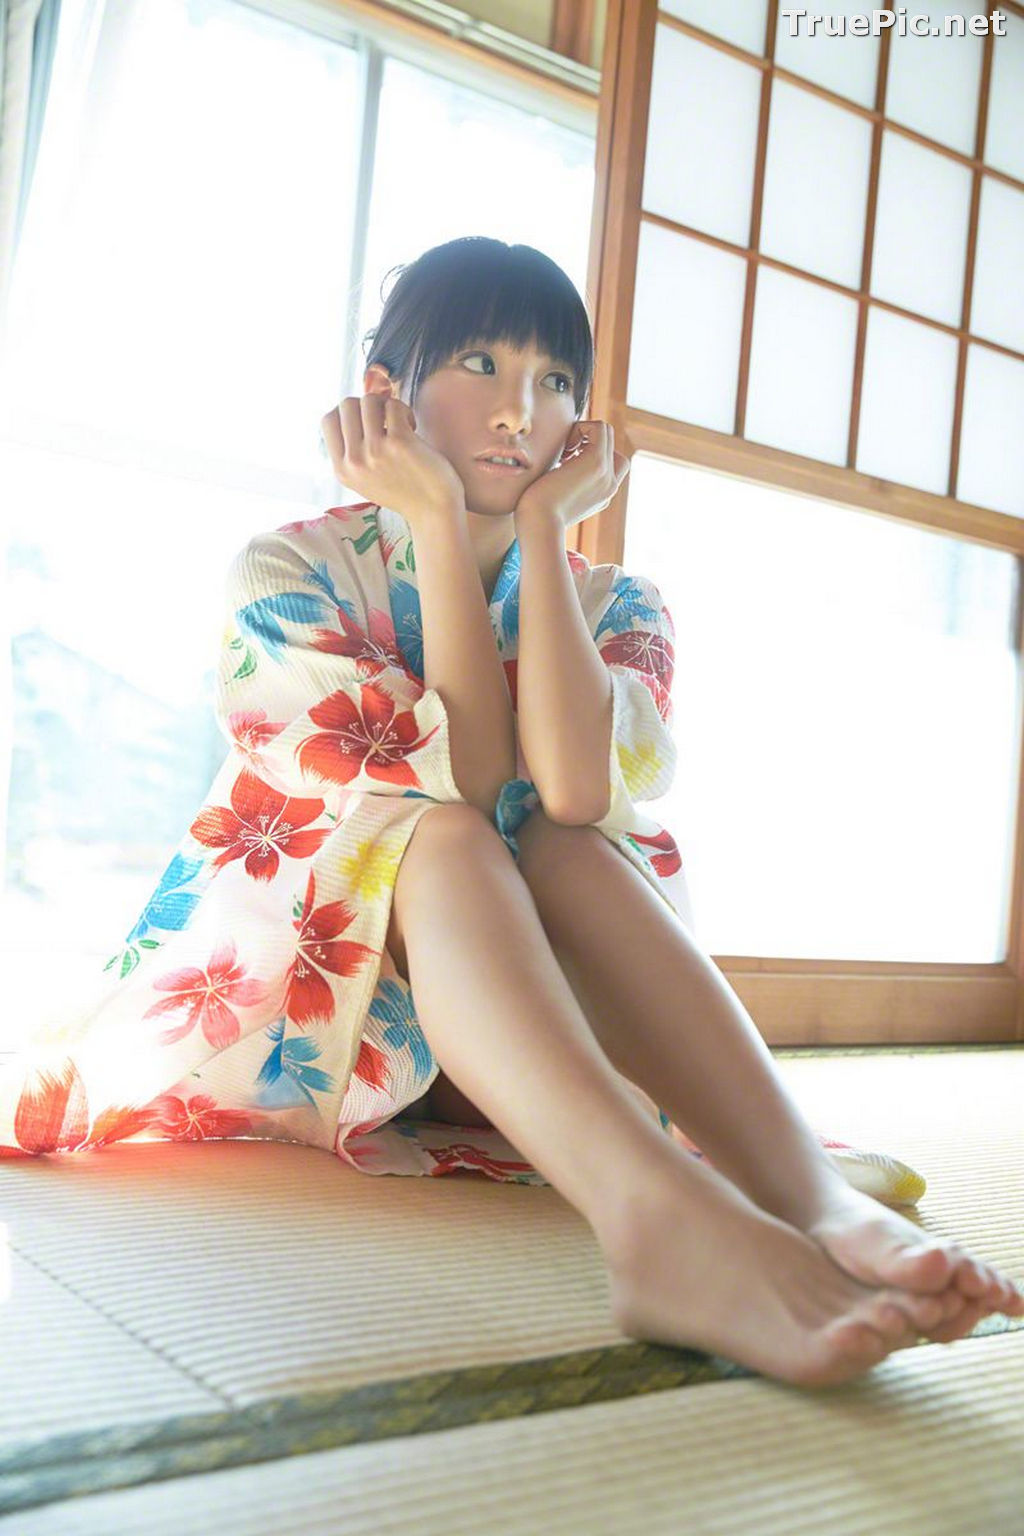 Image Wanibooks No.133 - Japanese Model and Singer - Hikari Shiina - TruePic.net - Picture-42